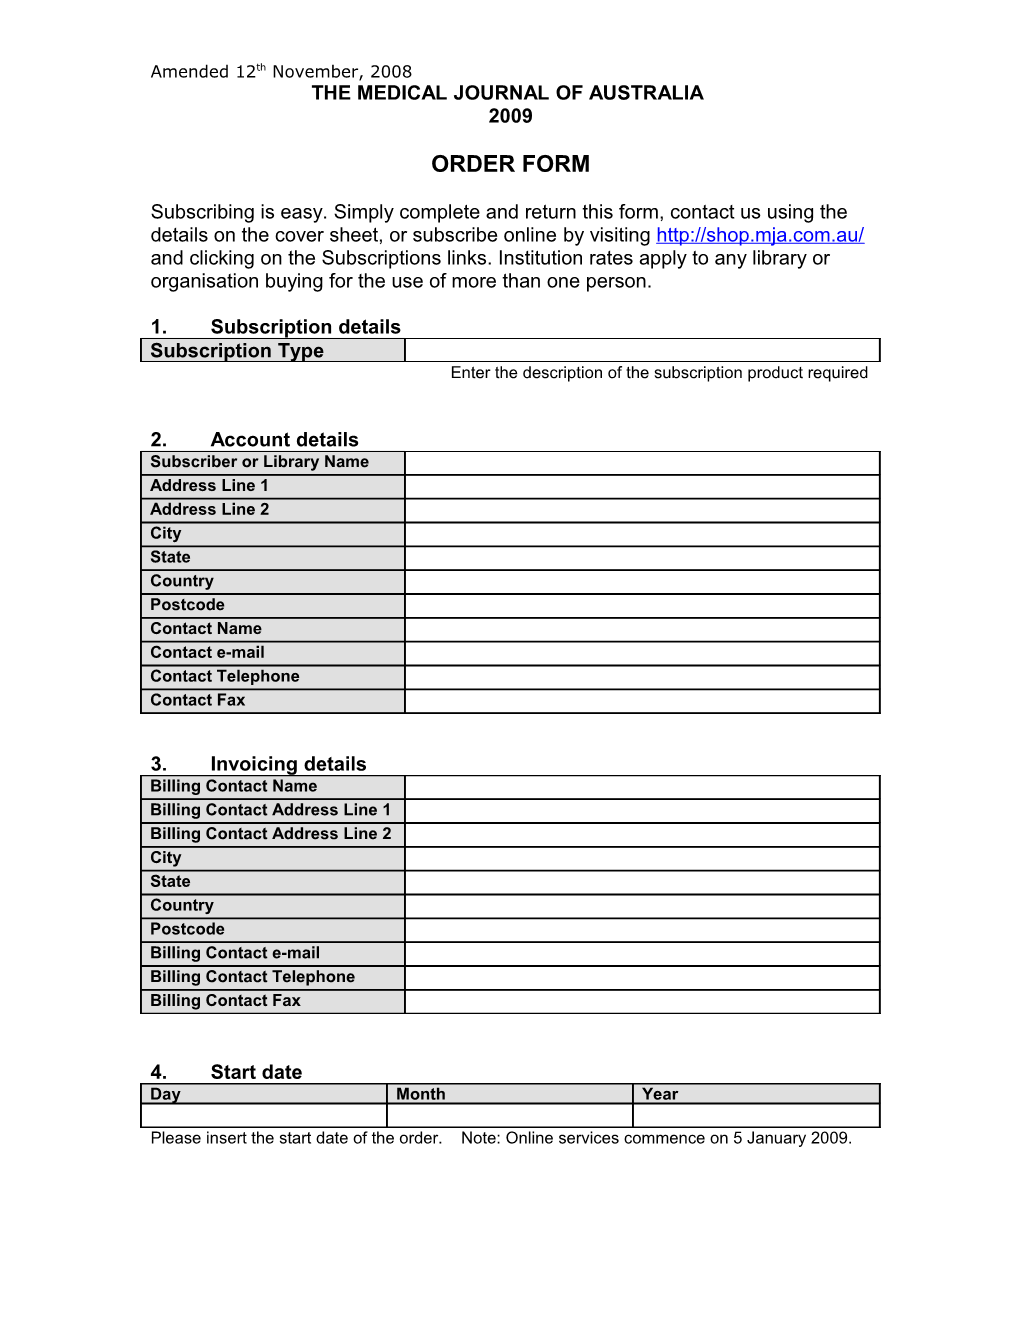 Internurse and Intermid Order Form 2008